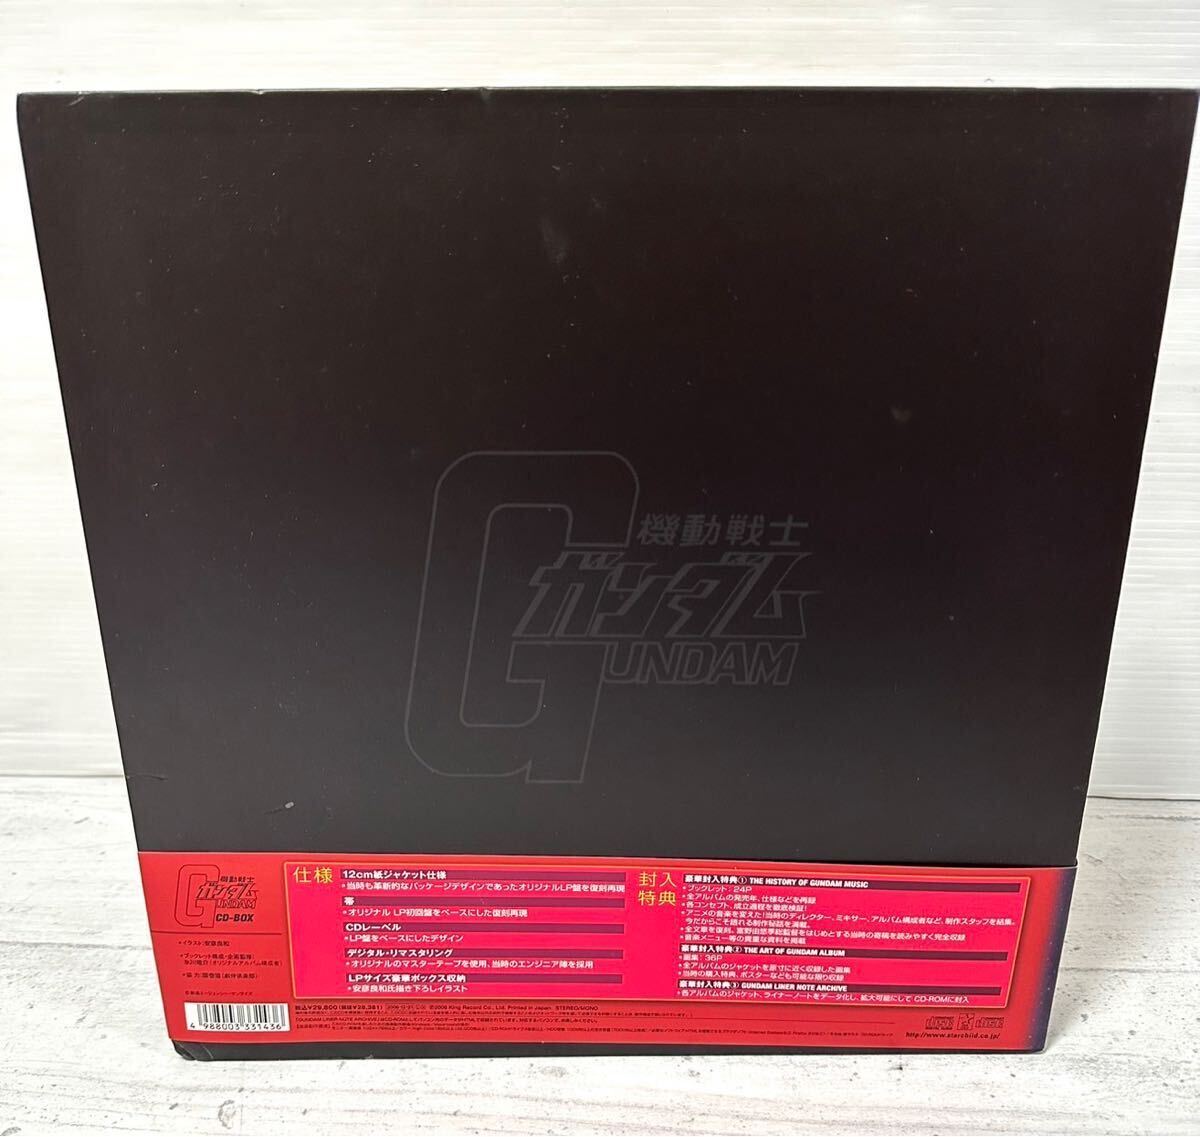 # очень редкий # Mobile Suit Gundam CD-BOX King запись CD все нераспечатанный саундтрек Gundam коллекция максимальный время Capsule товар 